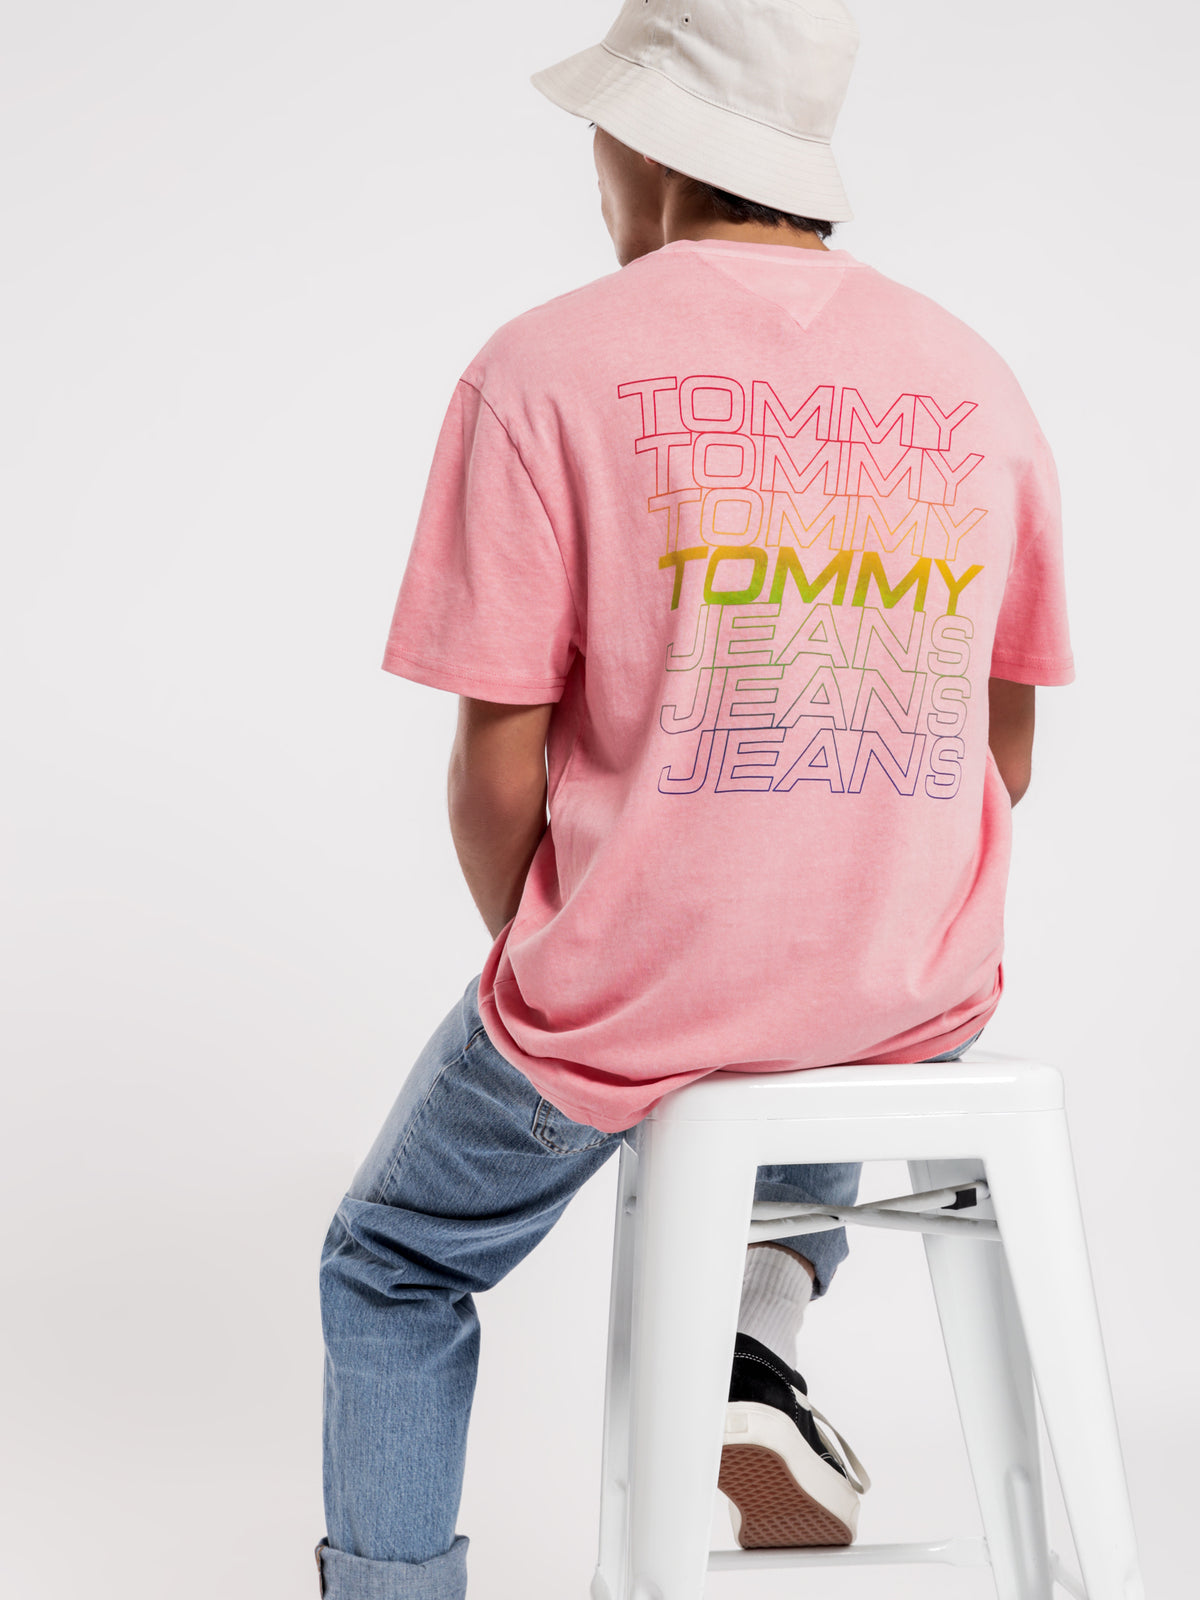 Repeat Logo T-Shirt in Rosey Pink